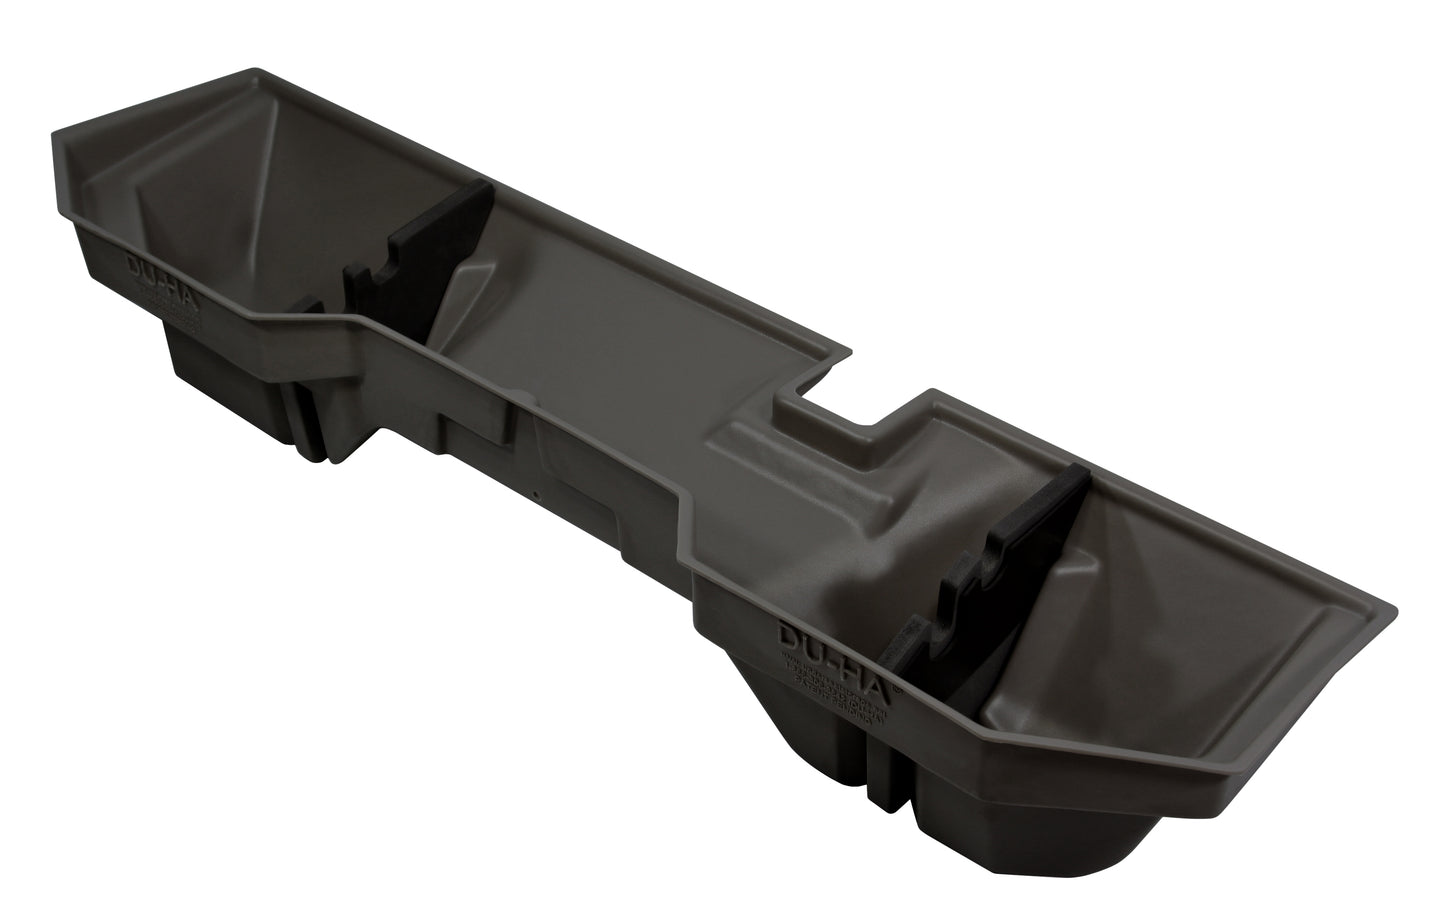 DU-HA 30017 Dodge Underseat Storage Console Organizer And Gun Case - Dark Gray